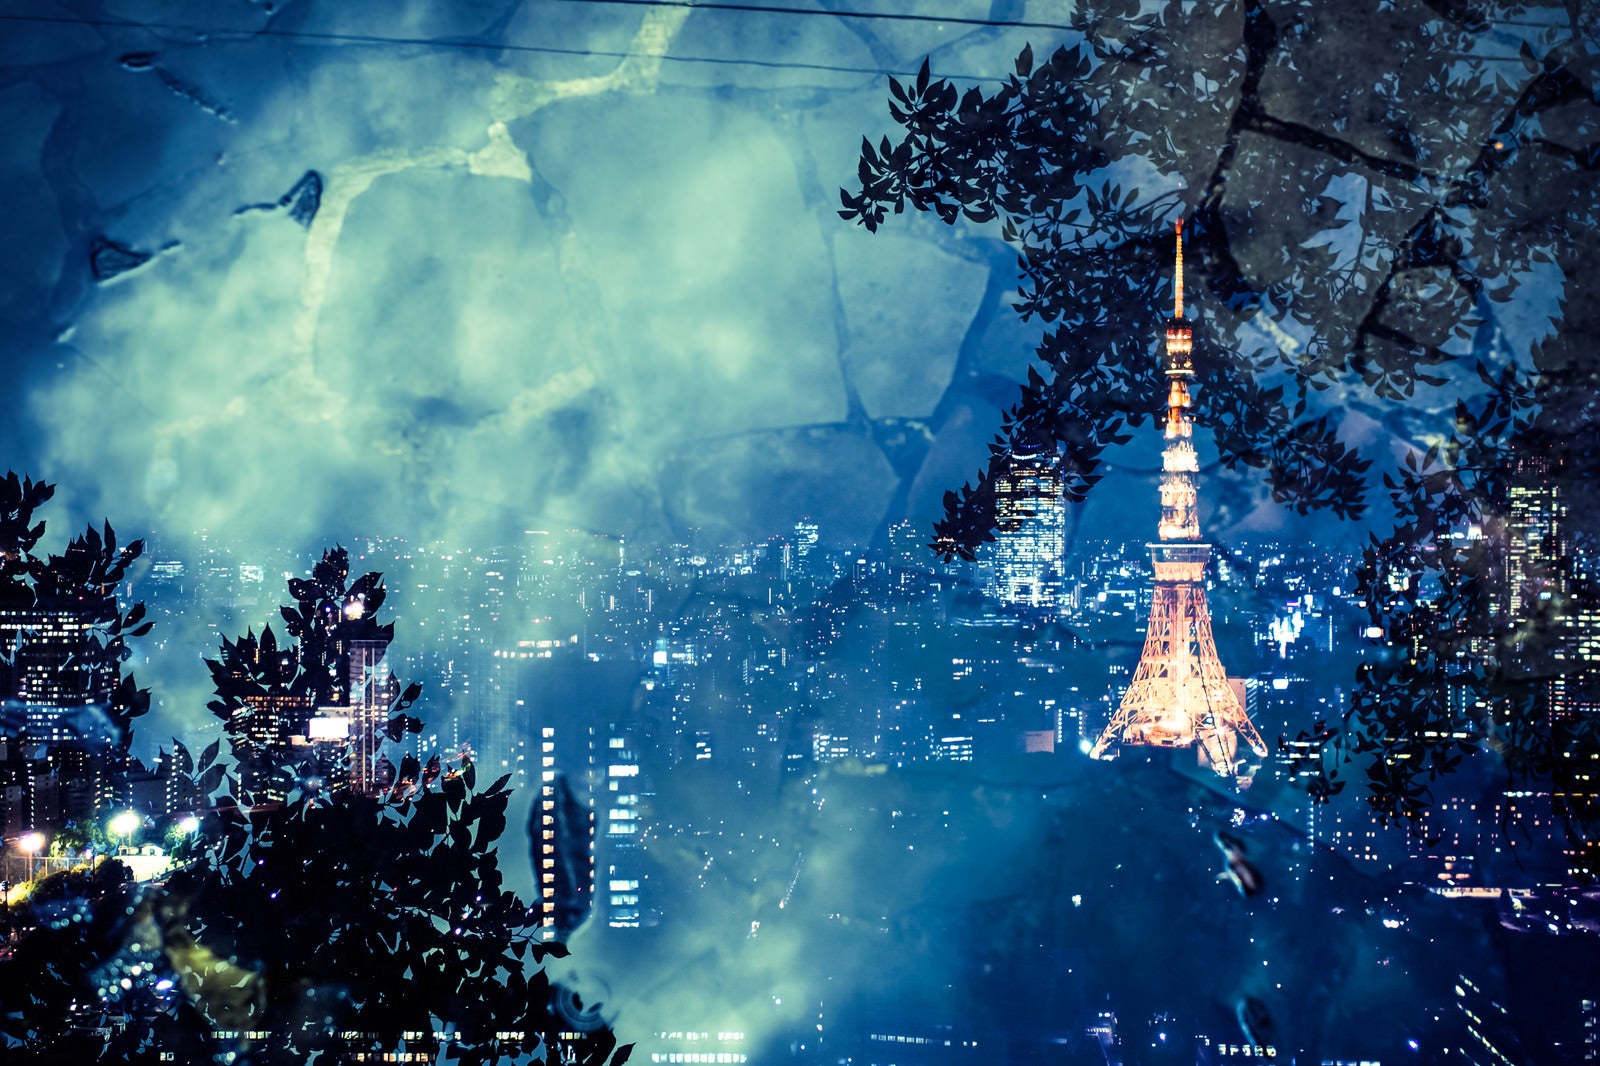 「石畳と東京タワー(夜景)」の写真